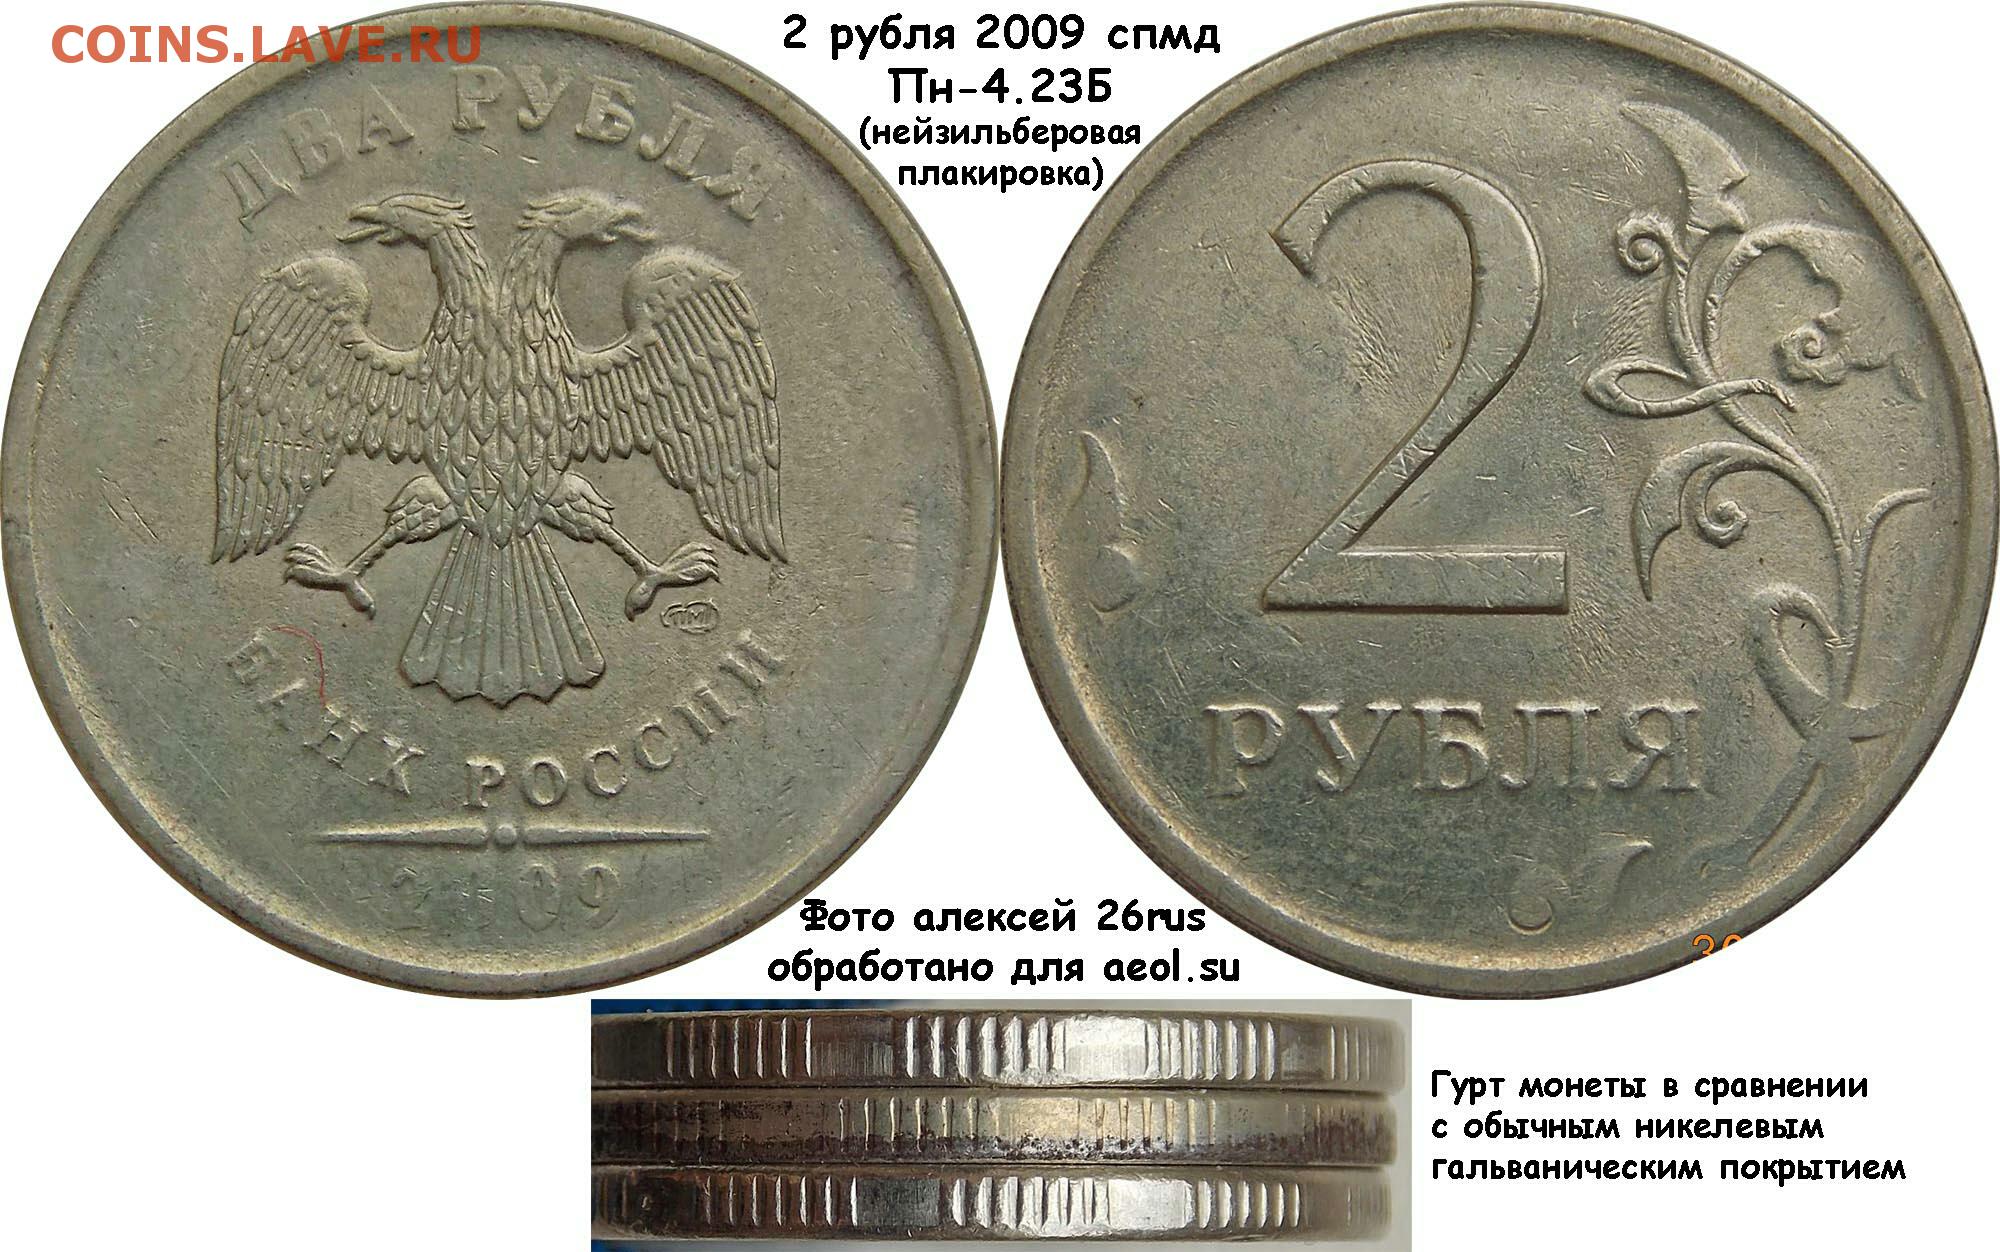 Тон коин цена на сегодня рублях. 2 Рубля 2009 СПМД. 2 Рубля 2009 г. СПМД, магнитные, сталь с мельхиоровой плакировкой.. Монета 2 рубля. Плакировка монет.